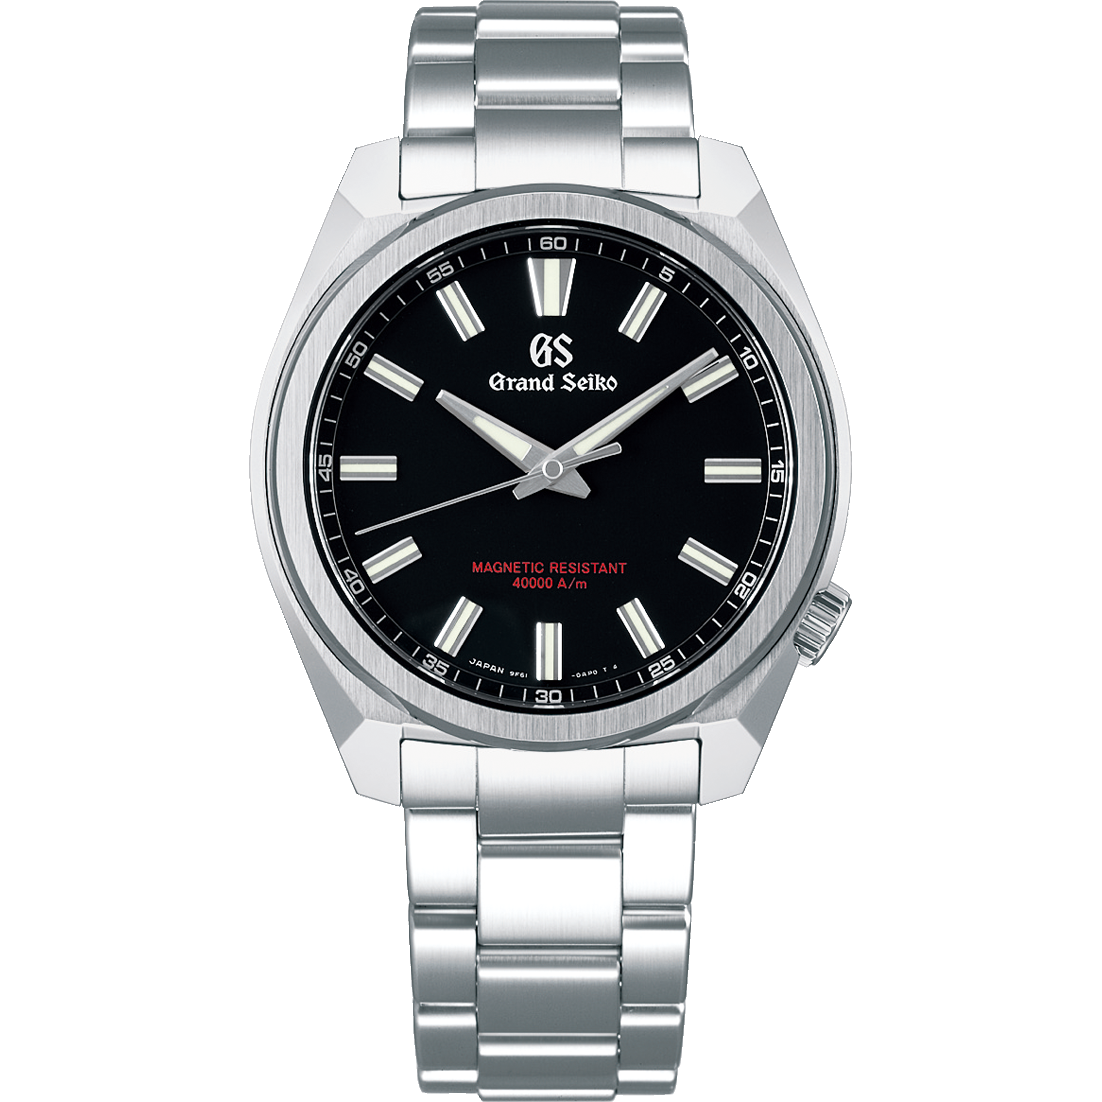 Grand Seiko SBGX343, 9F61 Quartz, black dial, stainless steel, men's watches